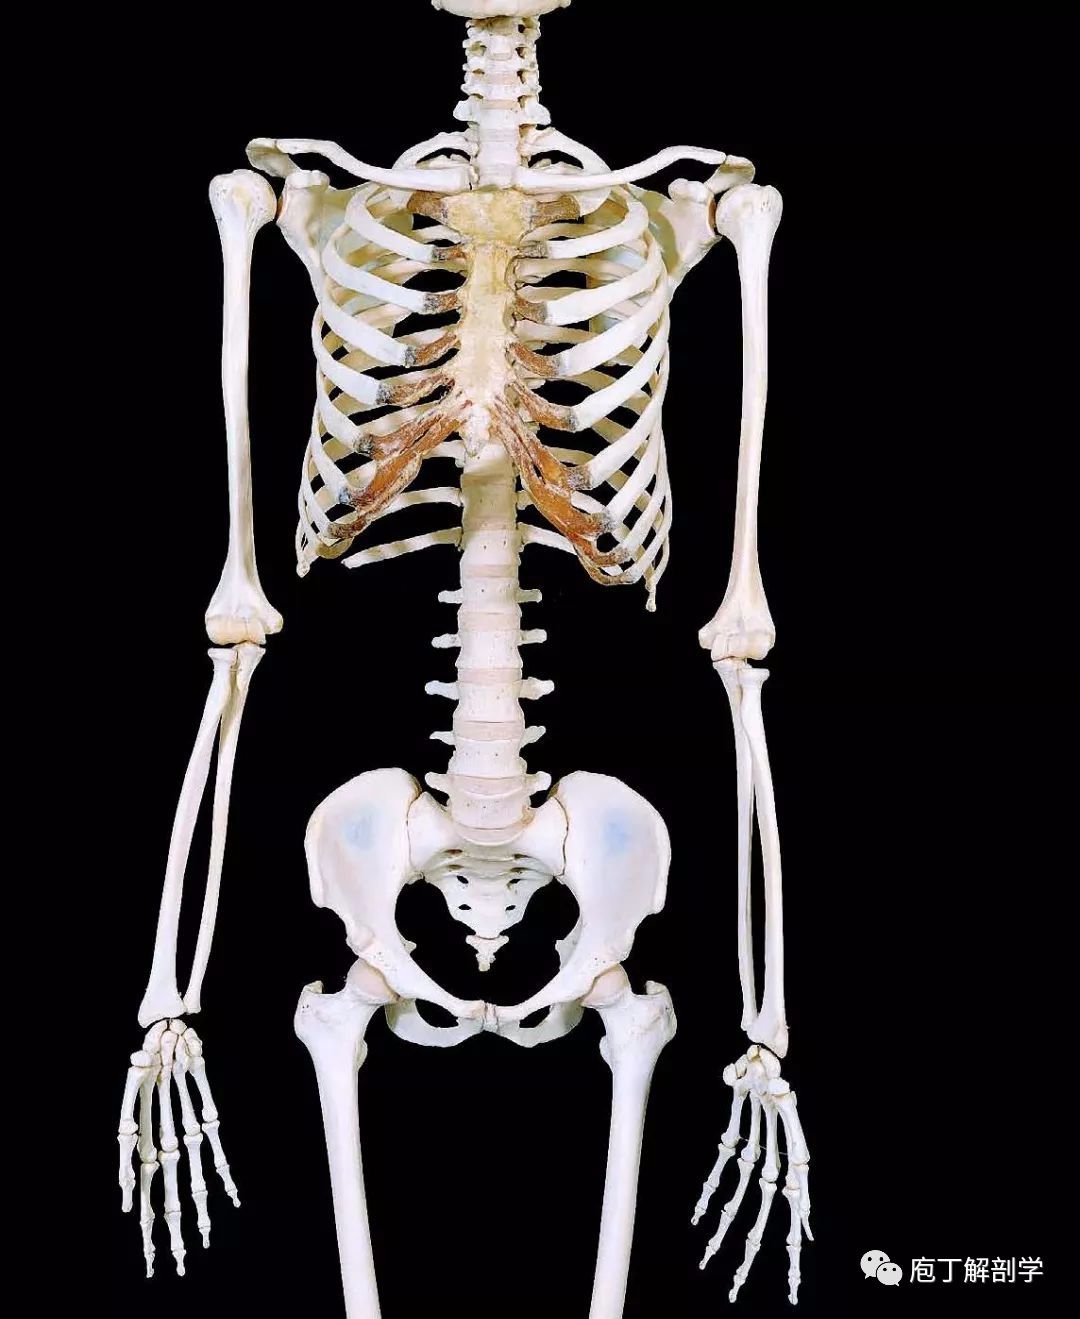 四肢骨包括上肢骨和下肢骨上,下肢骨分别由肢带骨和自由肢骨组成